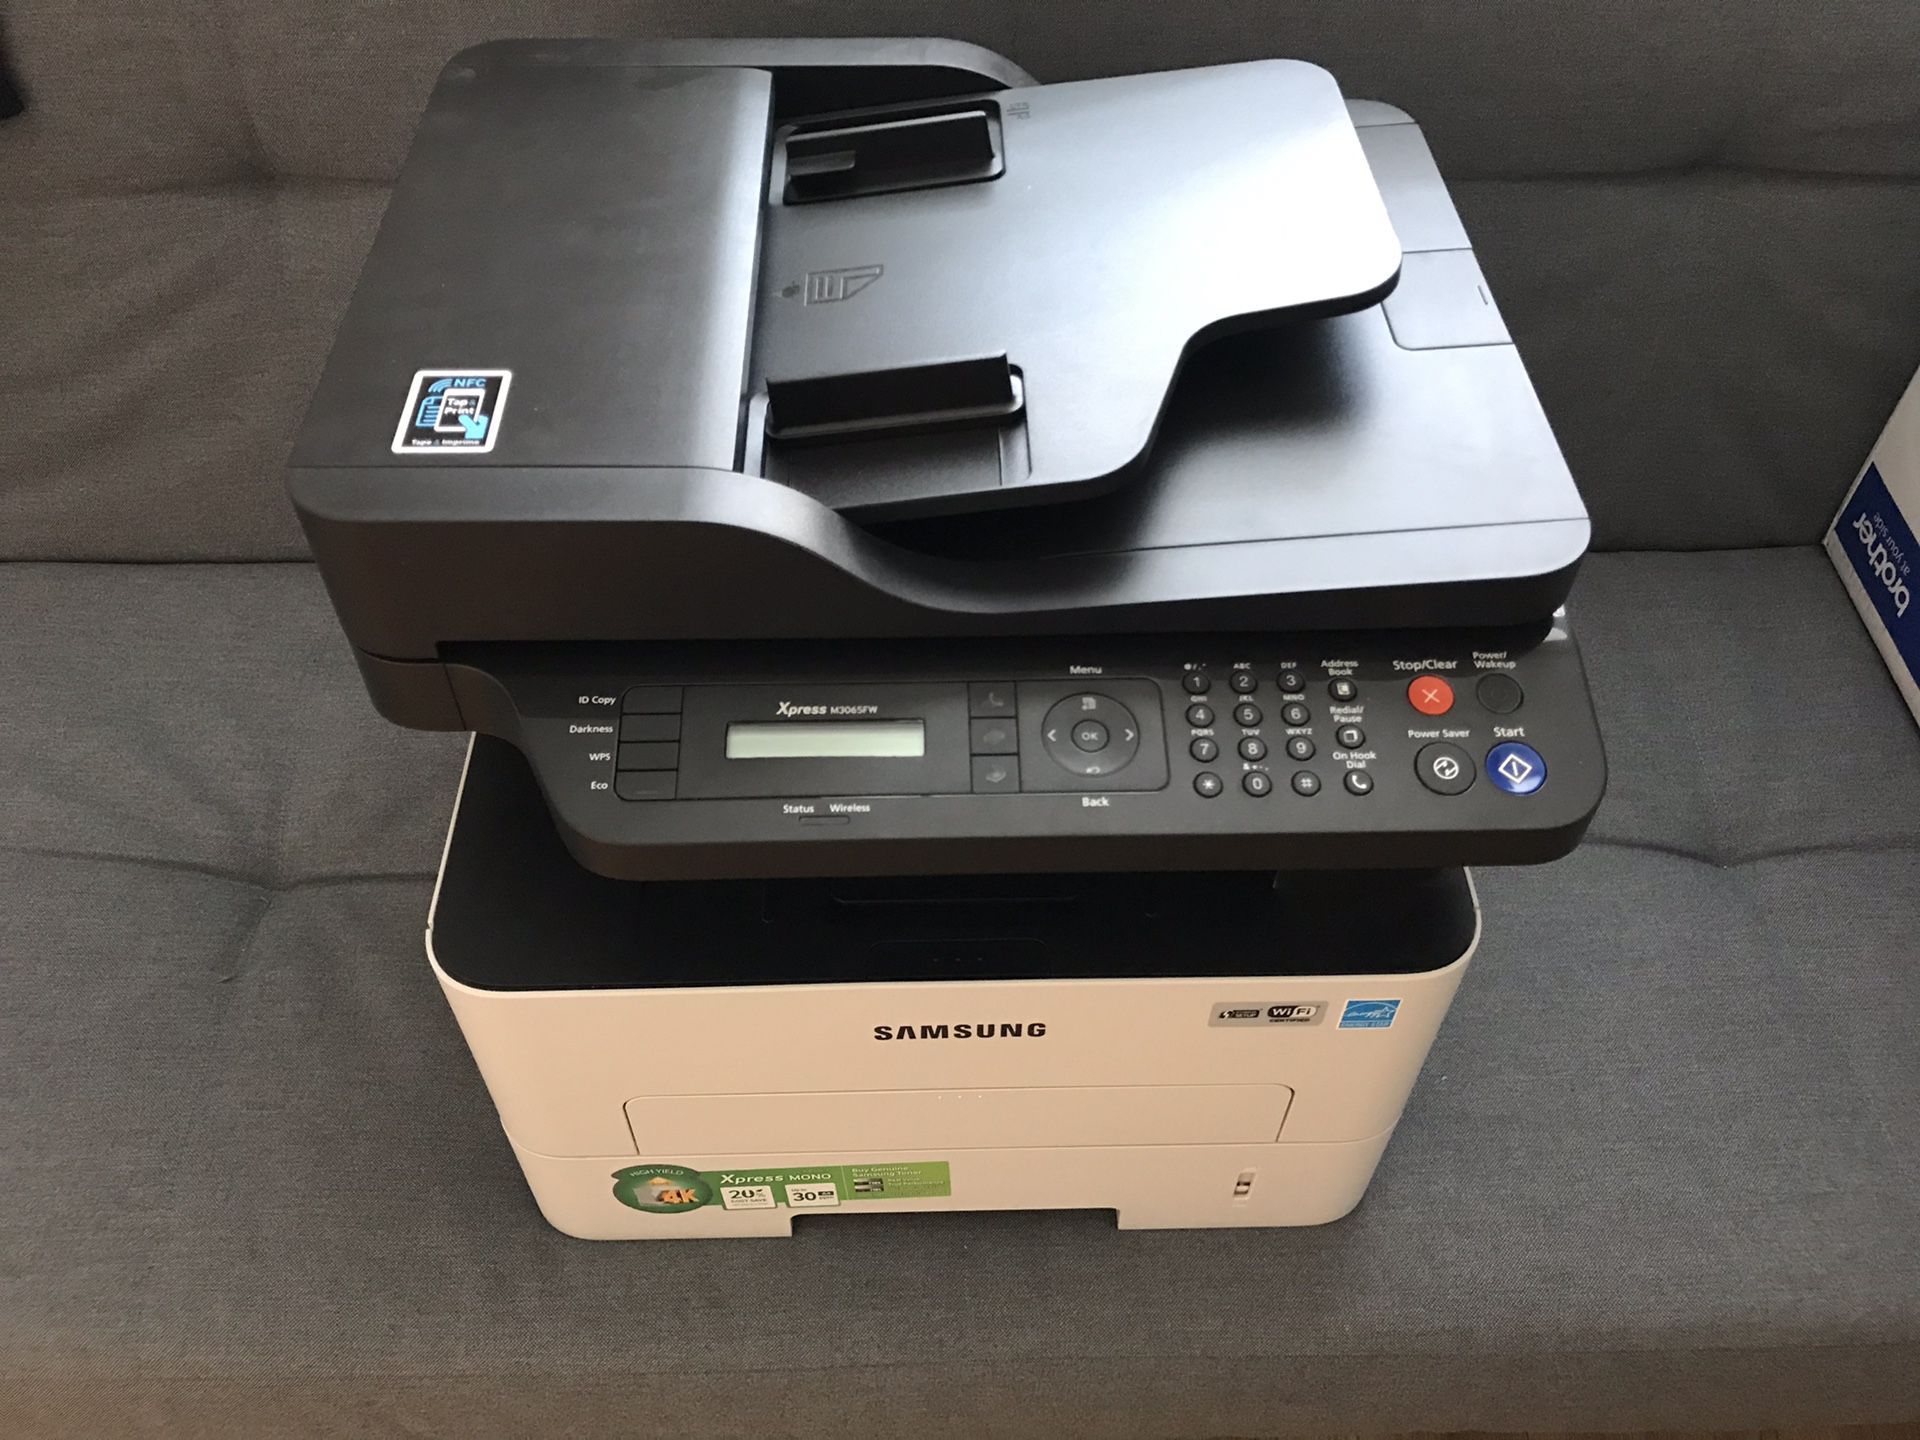 Samsung Xpress printer, scan, copier, fax